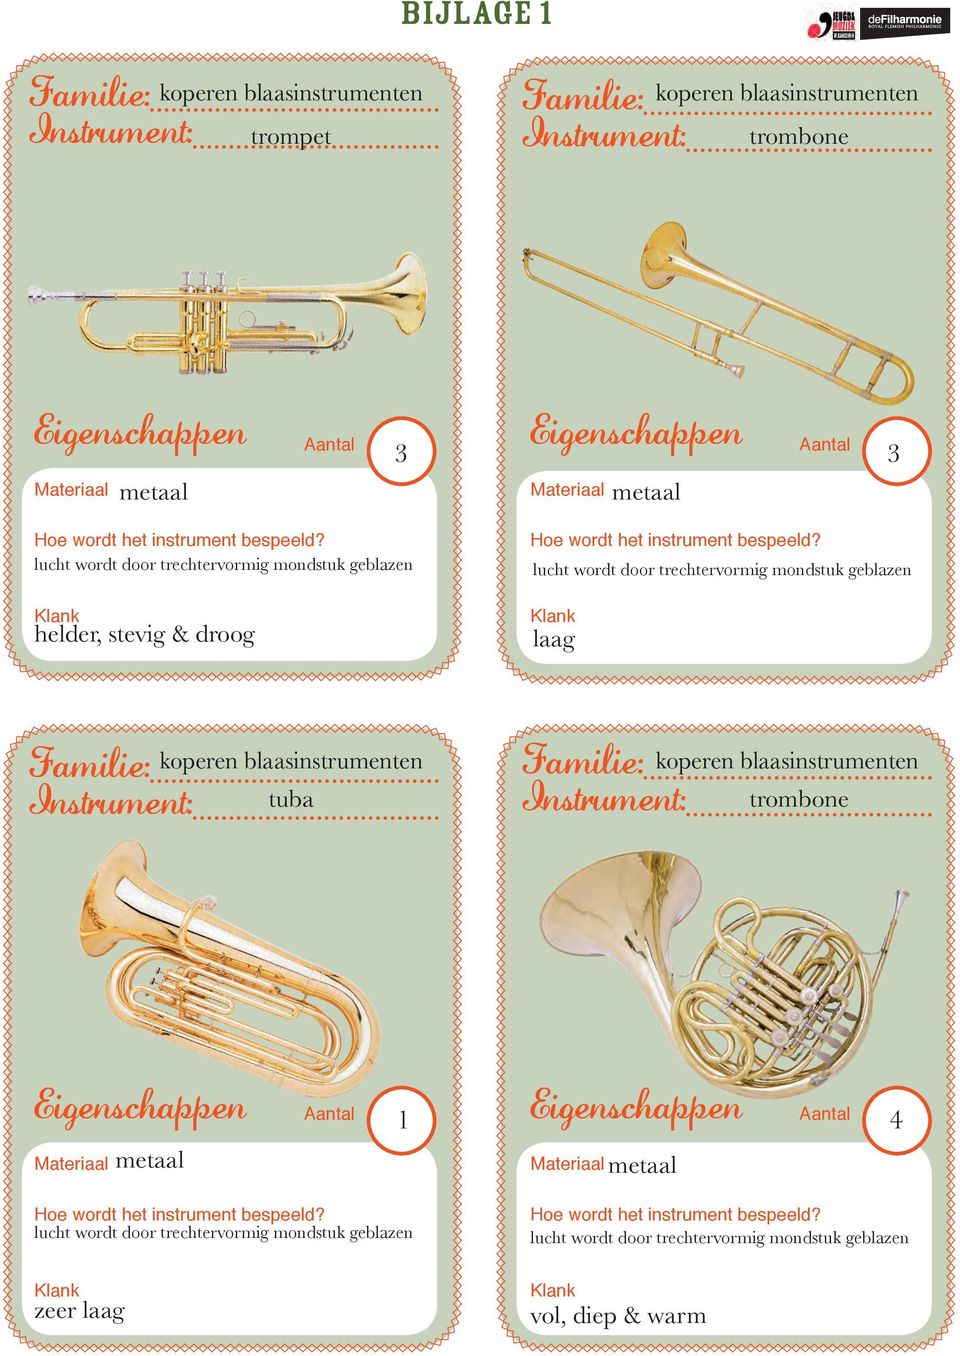 geblazen laag koperen blaasinstrumenten tuba koperen blaasinstrumenten trombone metaal 1 metaal 4 lucht